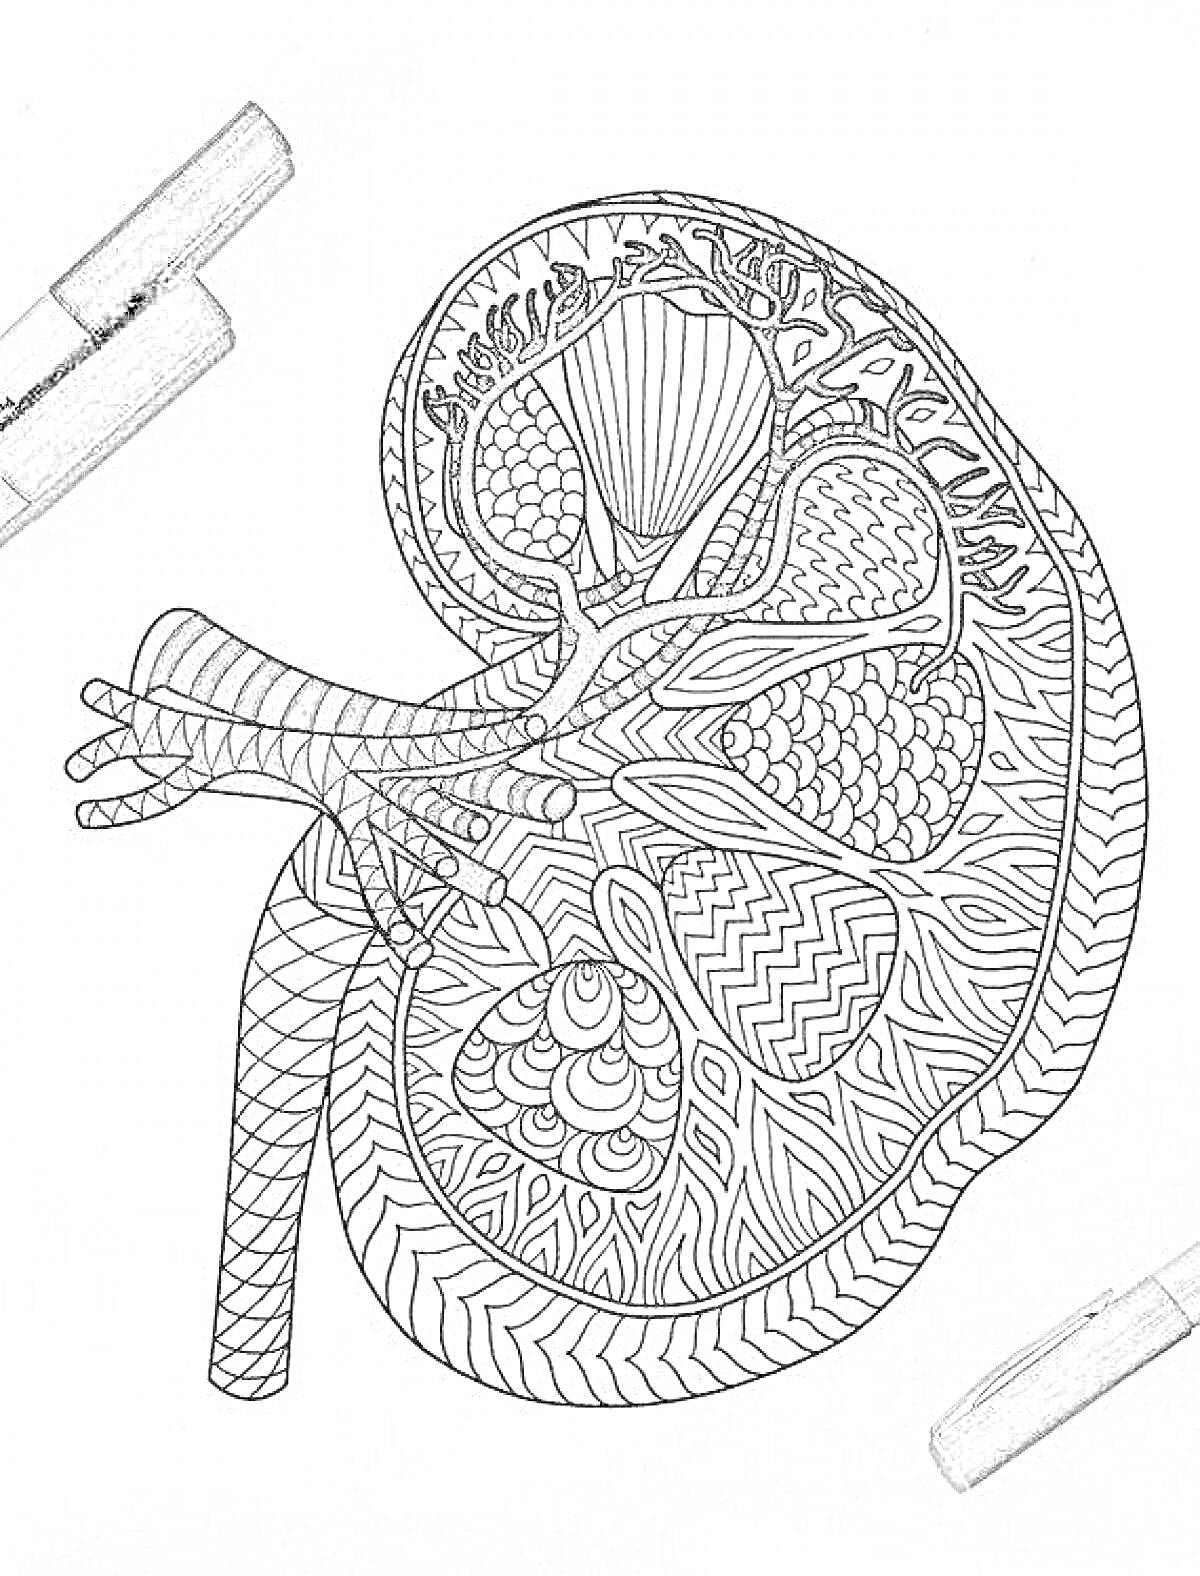 Раскраска Анатомическая раскраска почки с сегментами, артериями и узорами